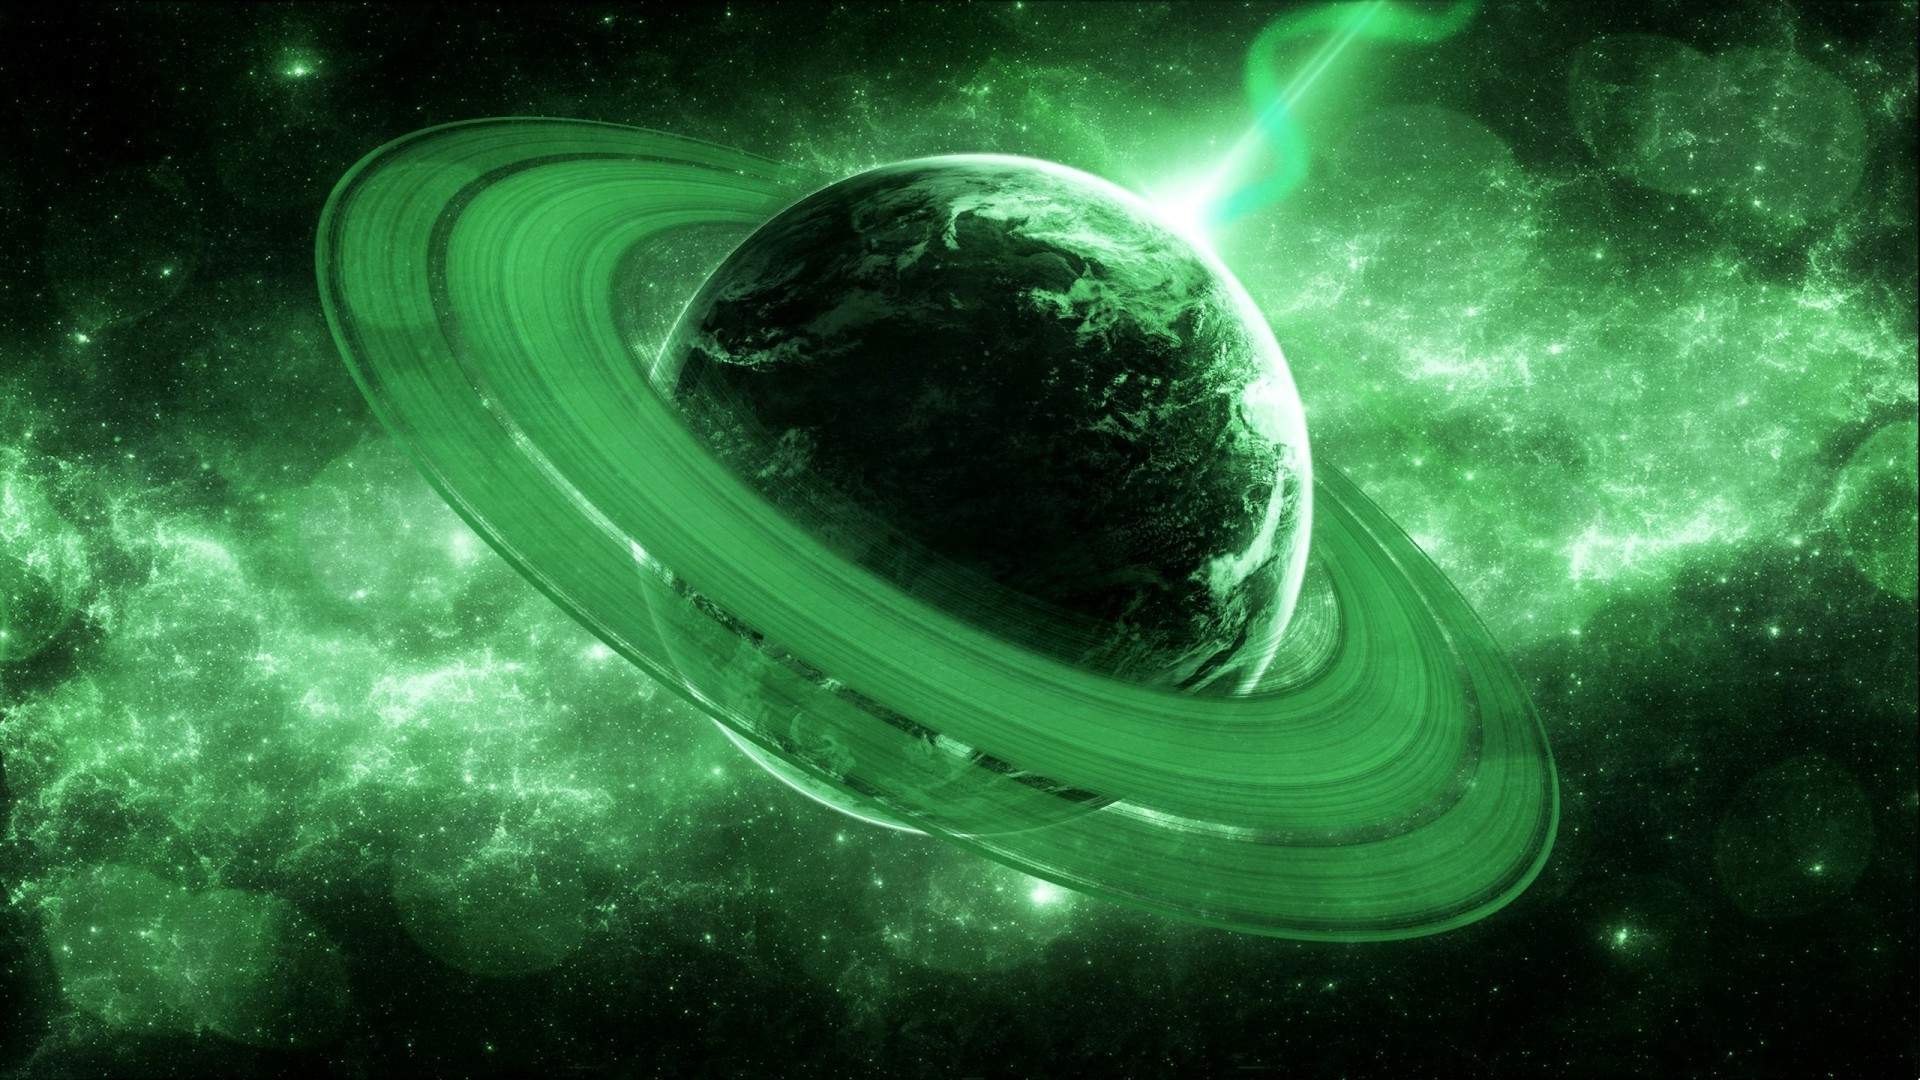 fond d'écran galaxie verte,vert,cosmos,objet astronomique,planète,univers